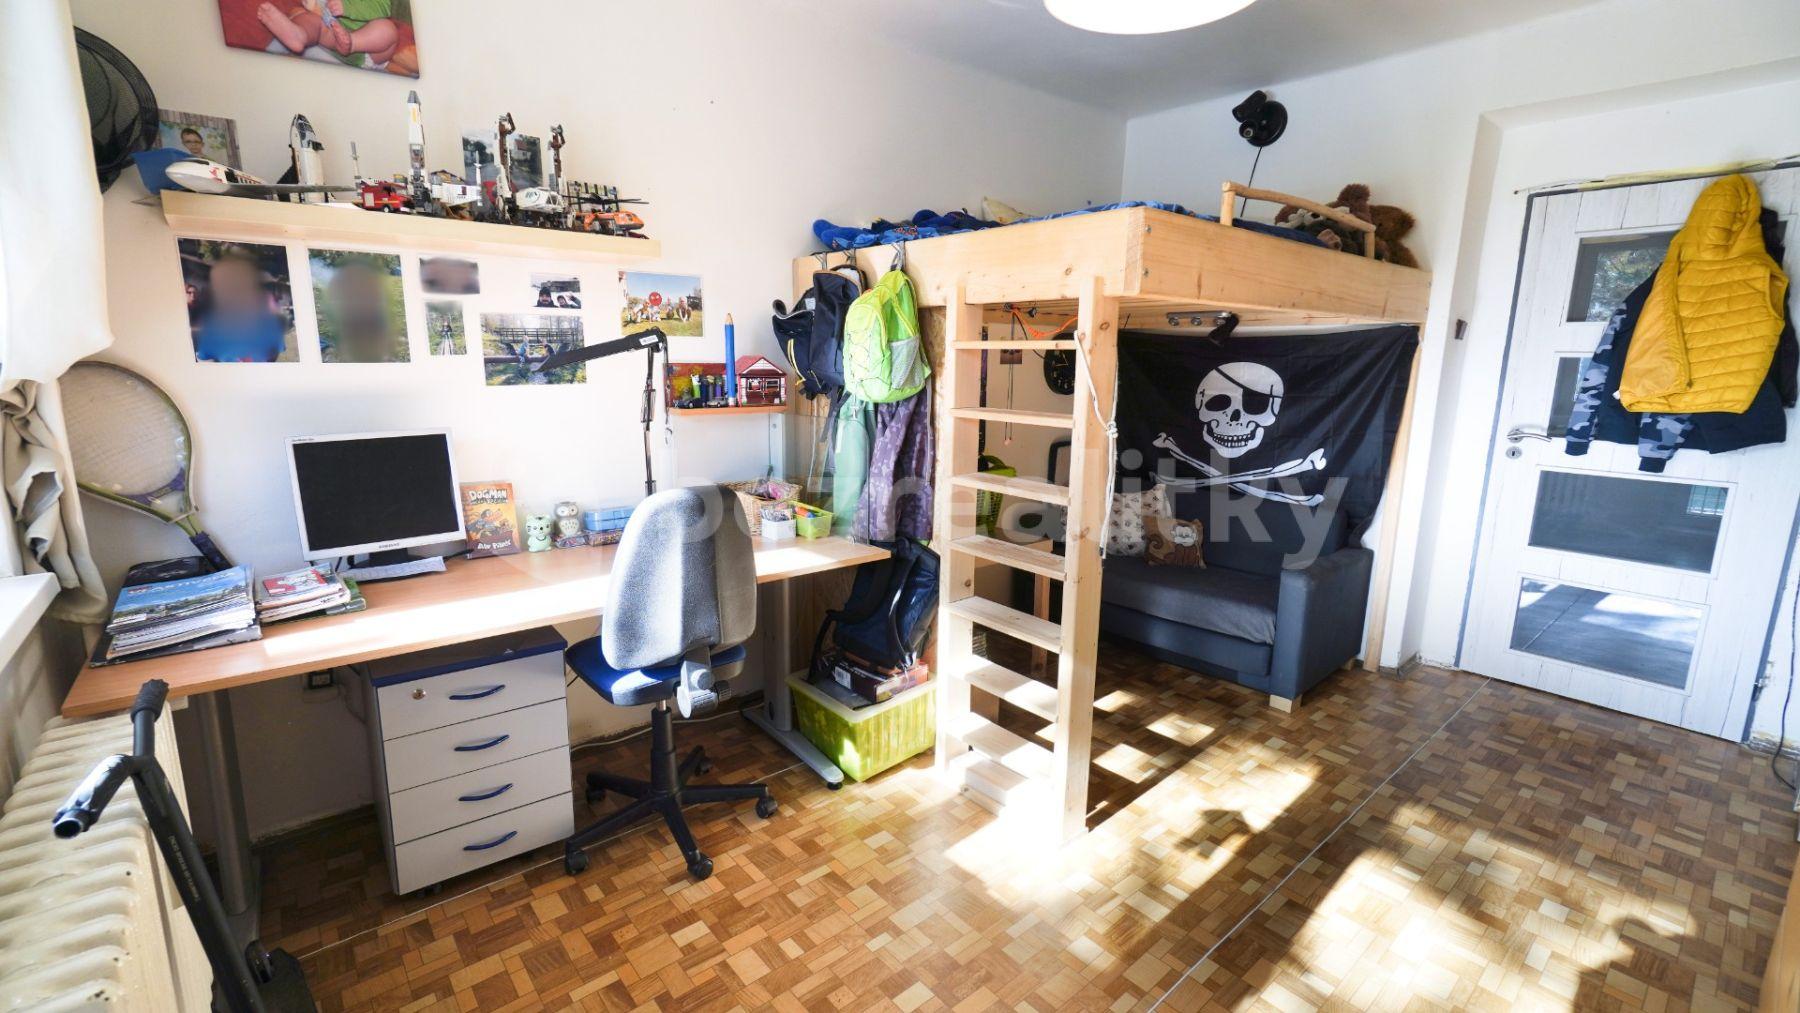 2 bedroom with open-plan kitchen flat for sale, 64 m², Legií, Řevnice, Středočeský Region